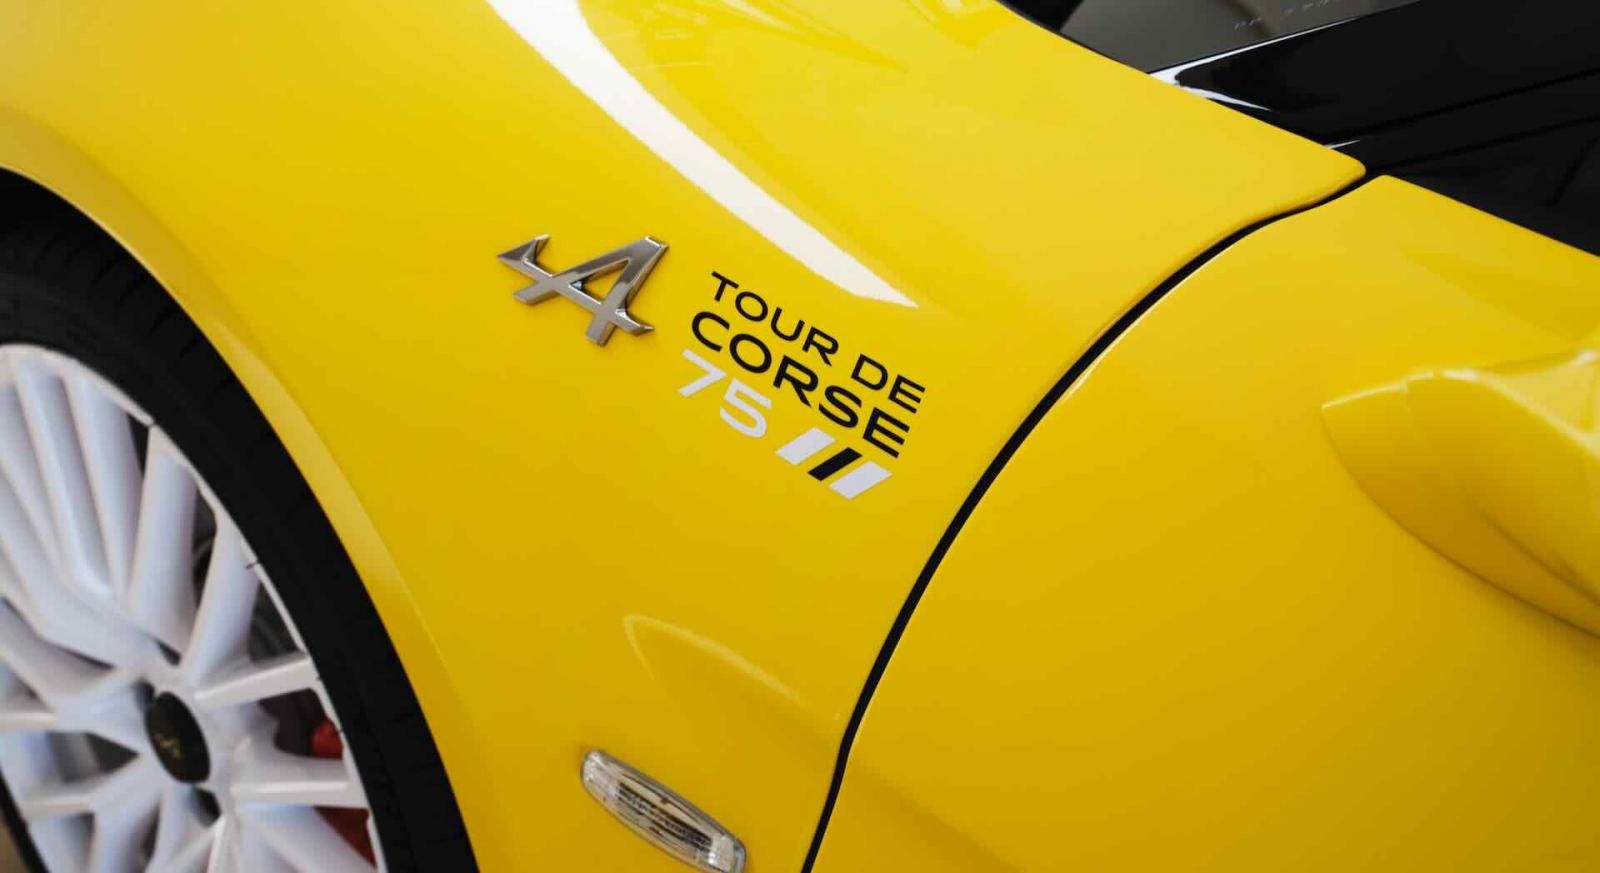 Alpine A110 Tour de Corse 75, edizione limitata